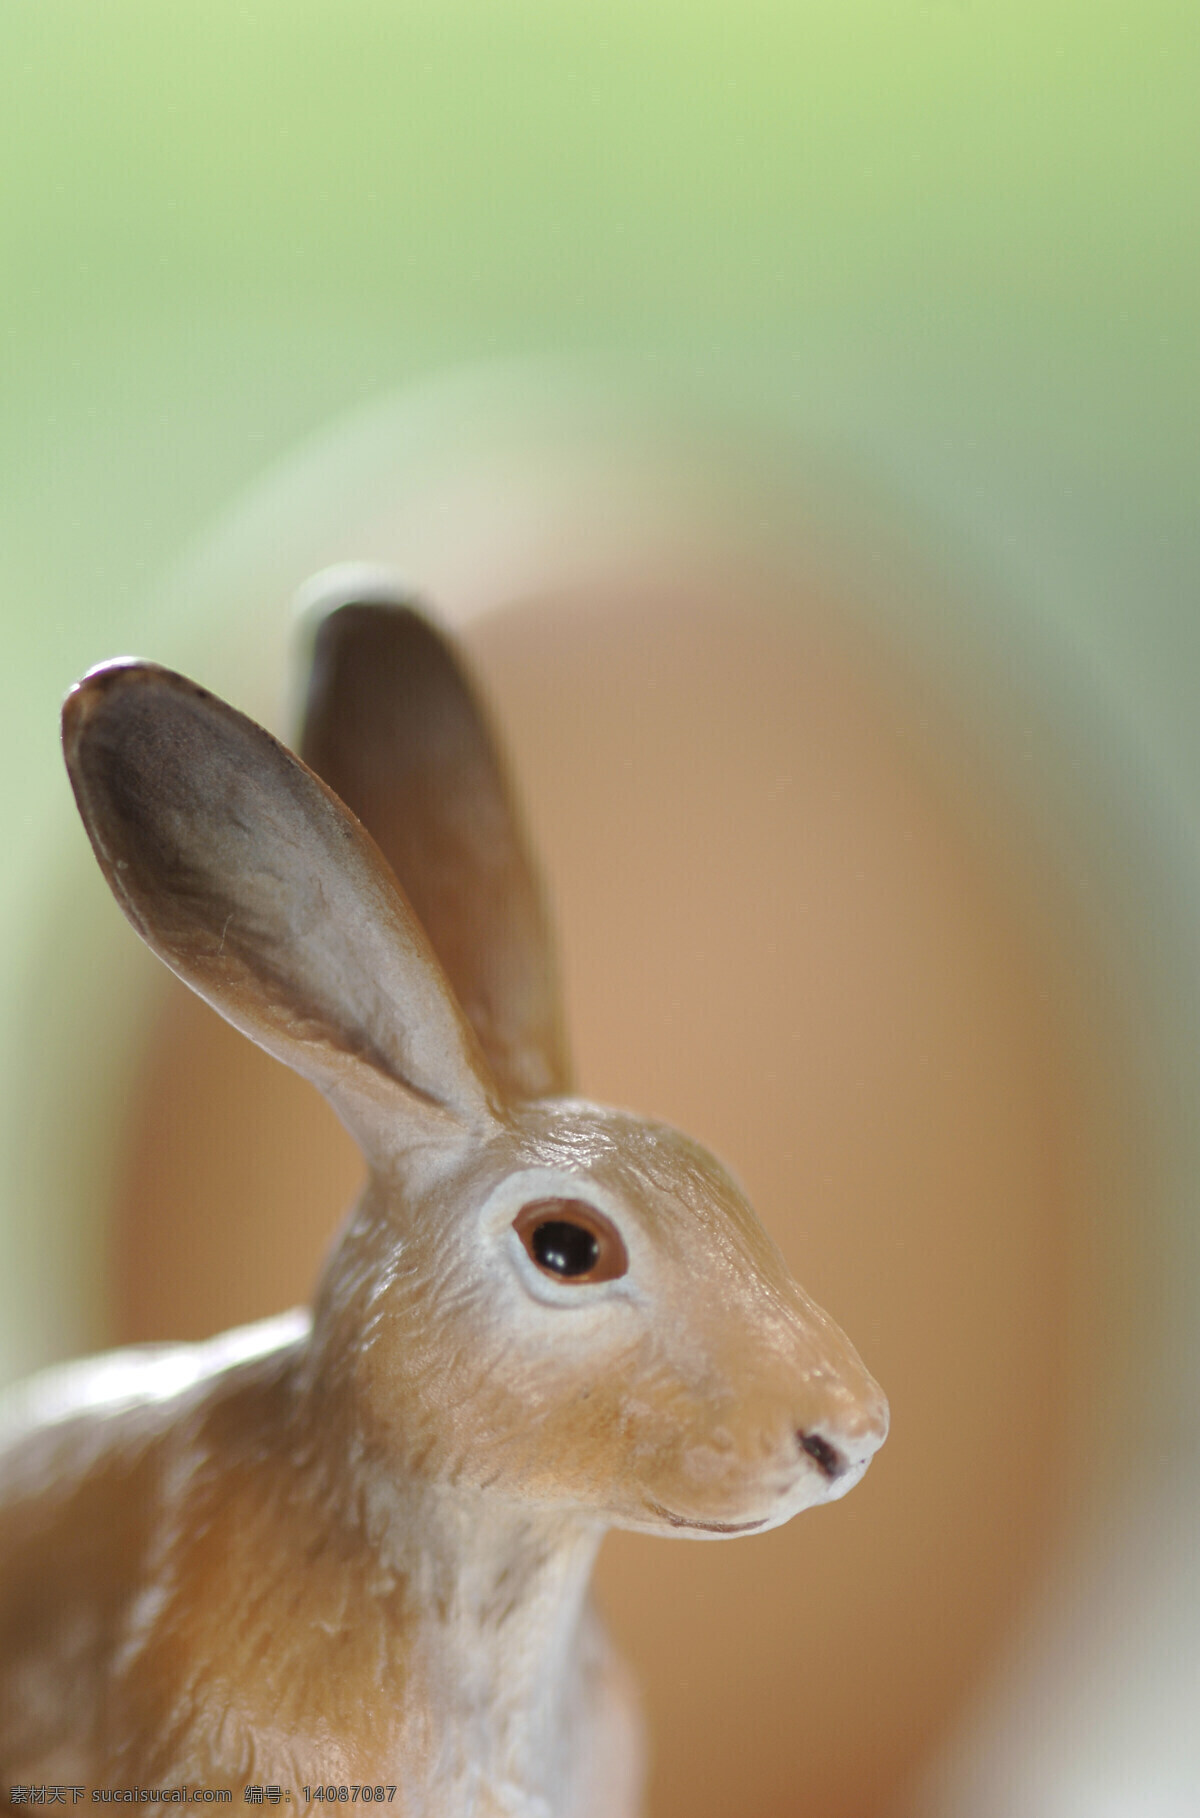 可爱 小 兔子 装饰品 可爱兔子 可爱小兔子 复活节素材 复活节装饰品 陆地动物 生物世界